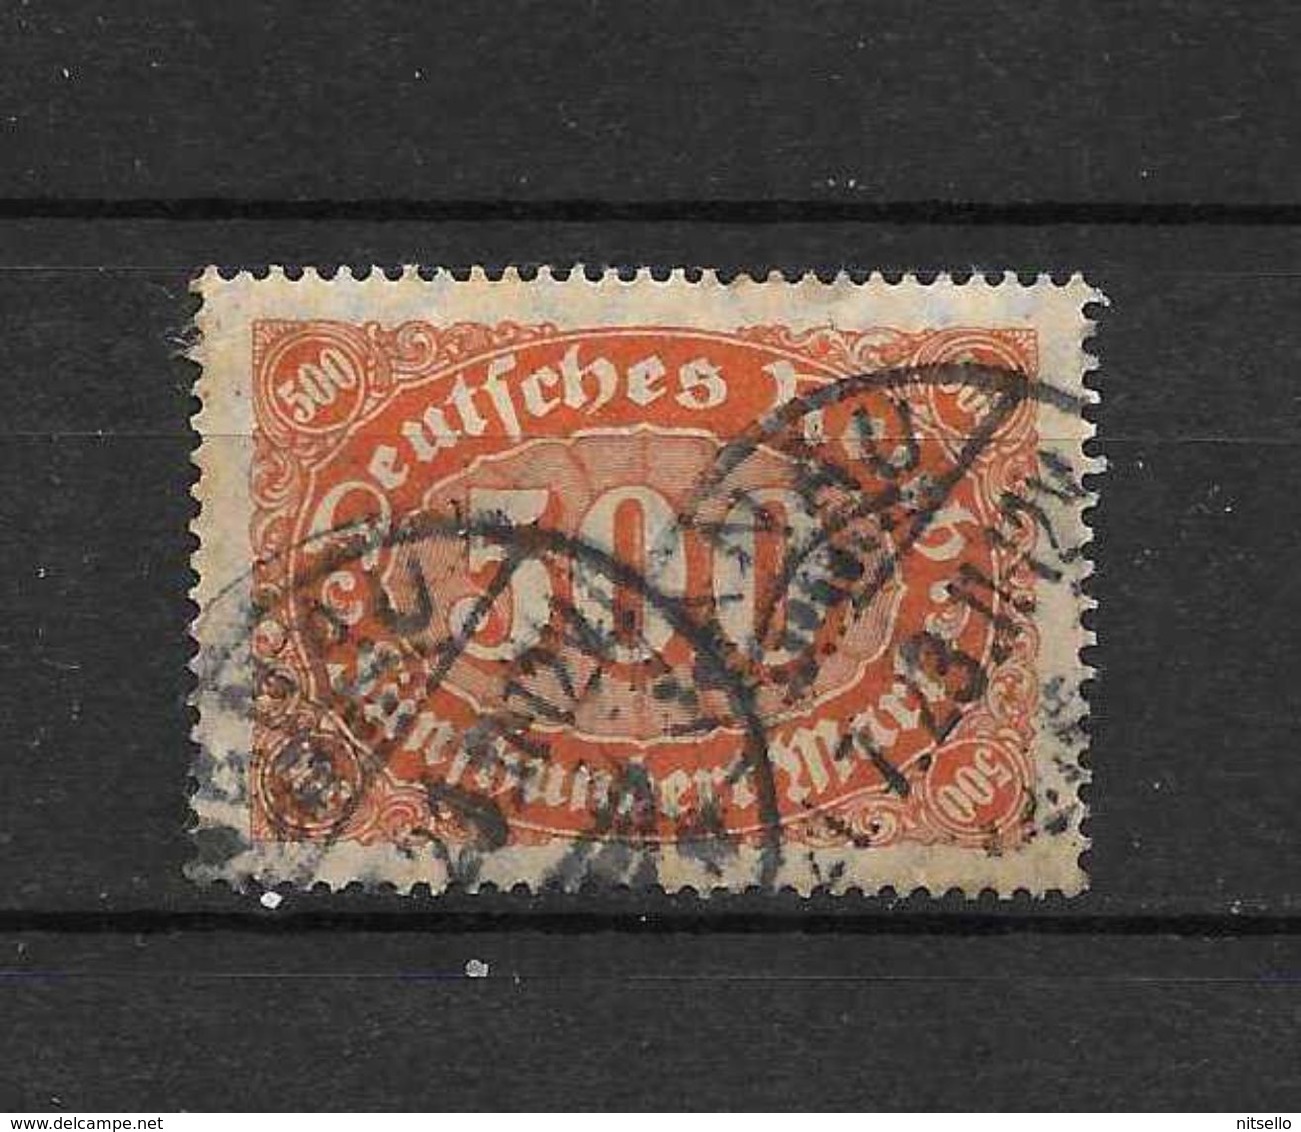 LOTE 1667  ///   ALEMANIA IMPERIO  YVERT Nº: 159 CON FECHADOR DE DRESLAU - Used Stamps